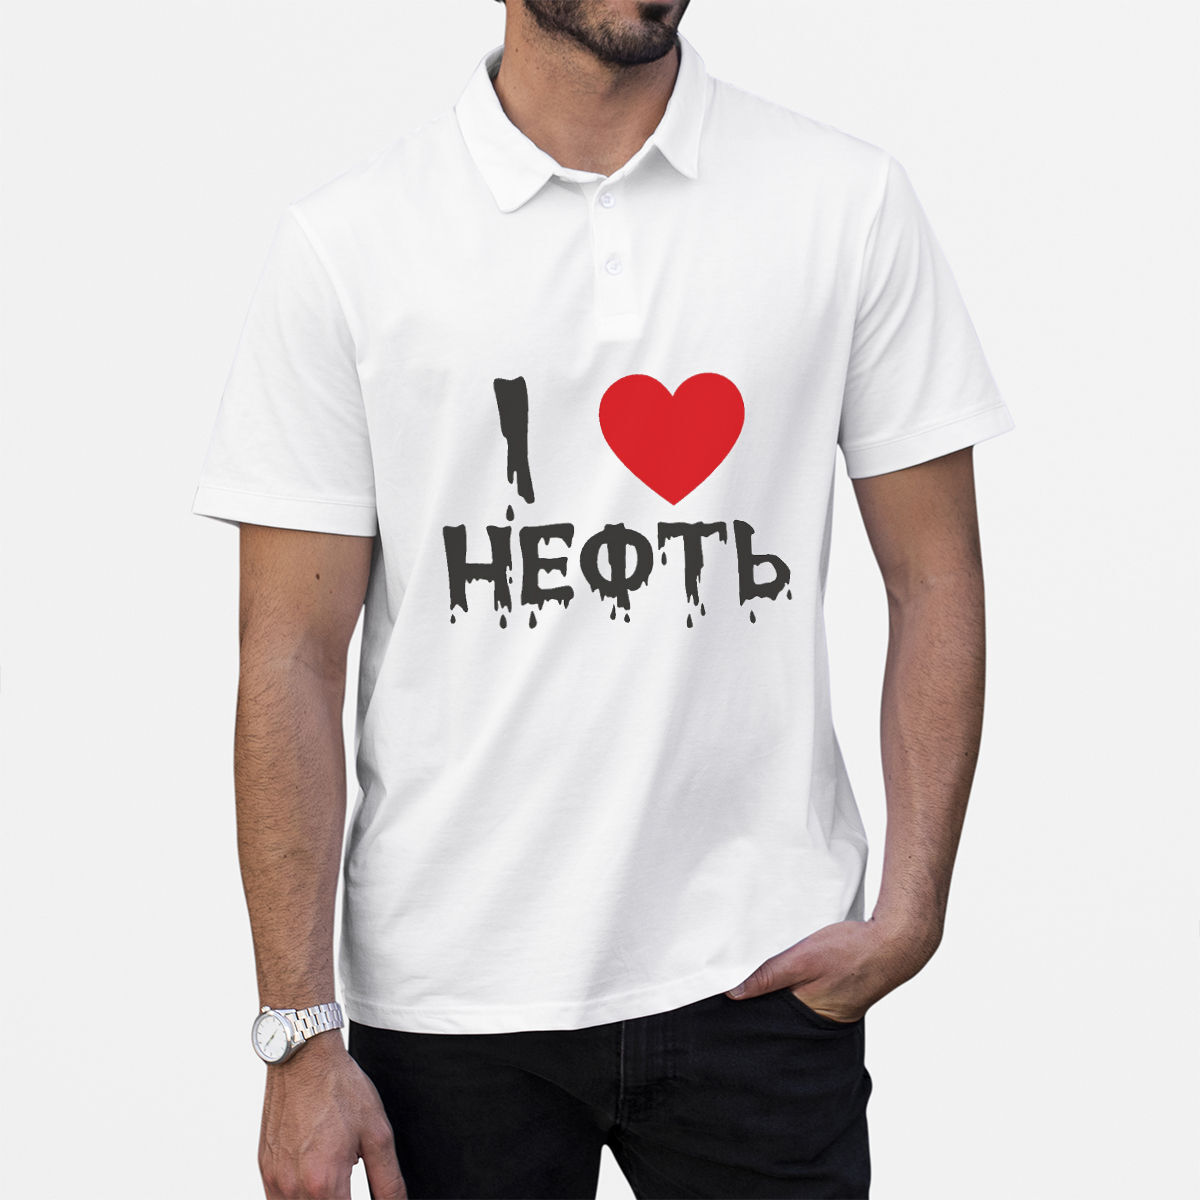 I love egypt. I Love Egypt футболка. II Love Egypt футболка. Майки с надписями по испански.